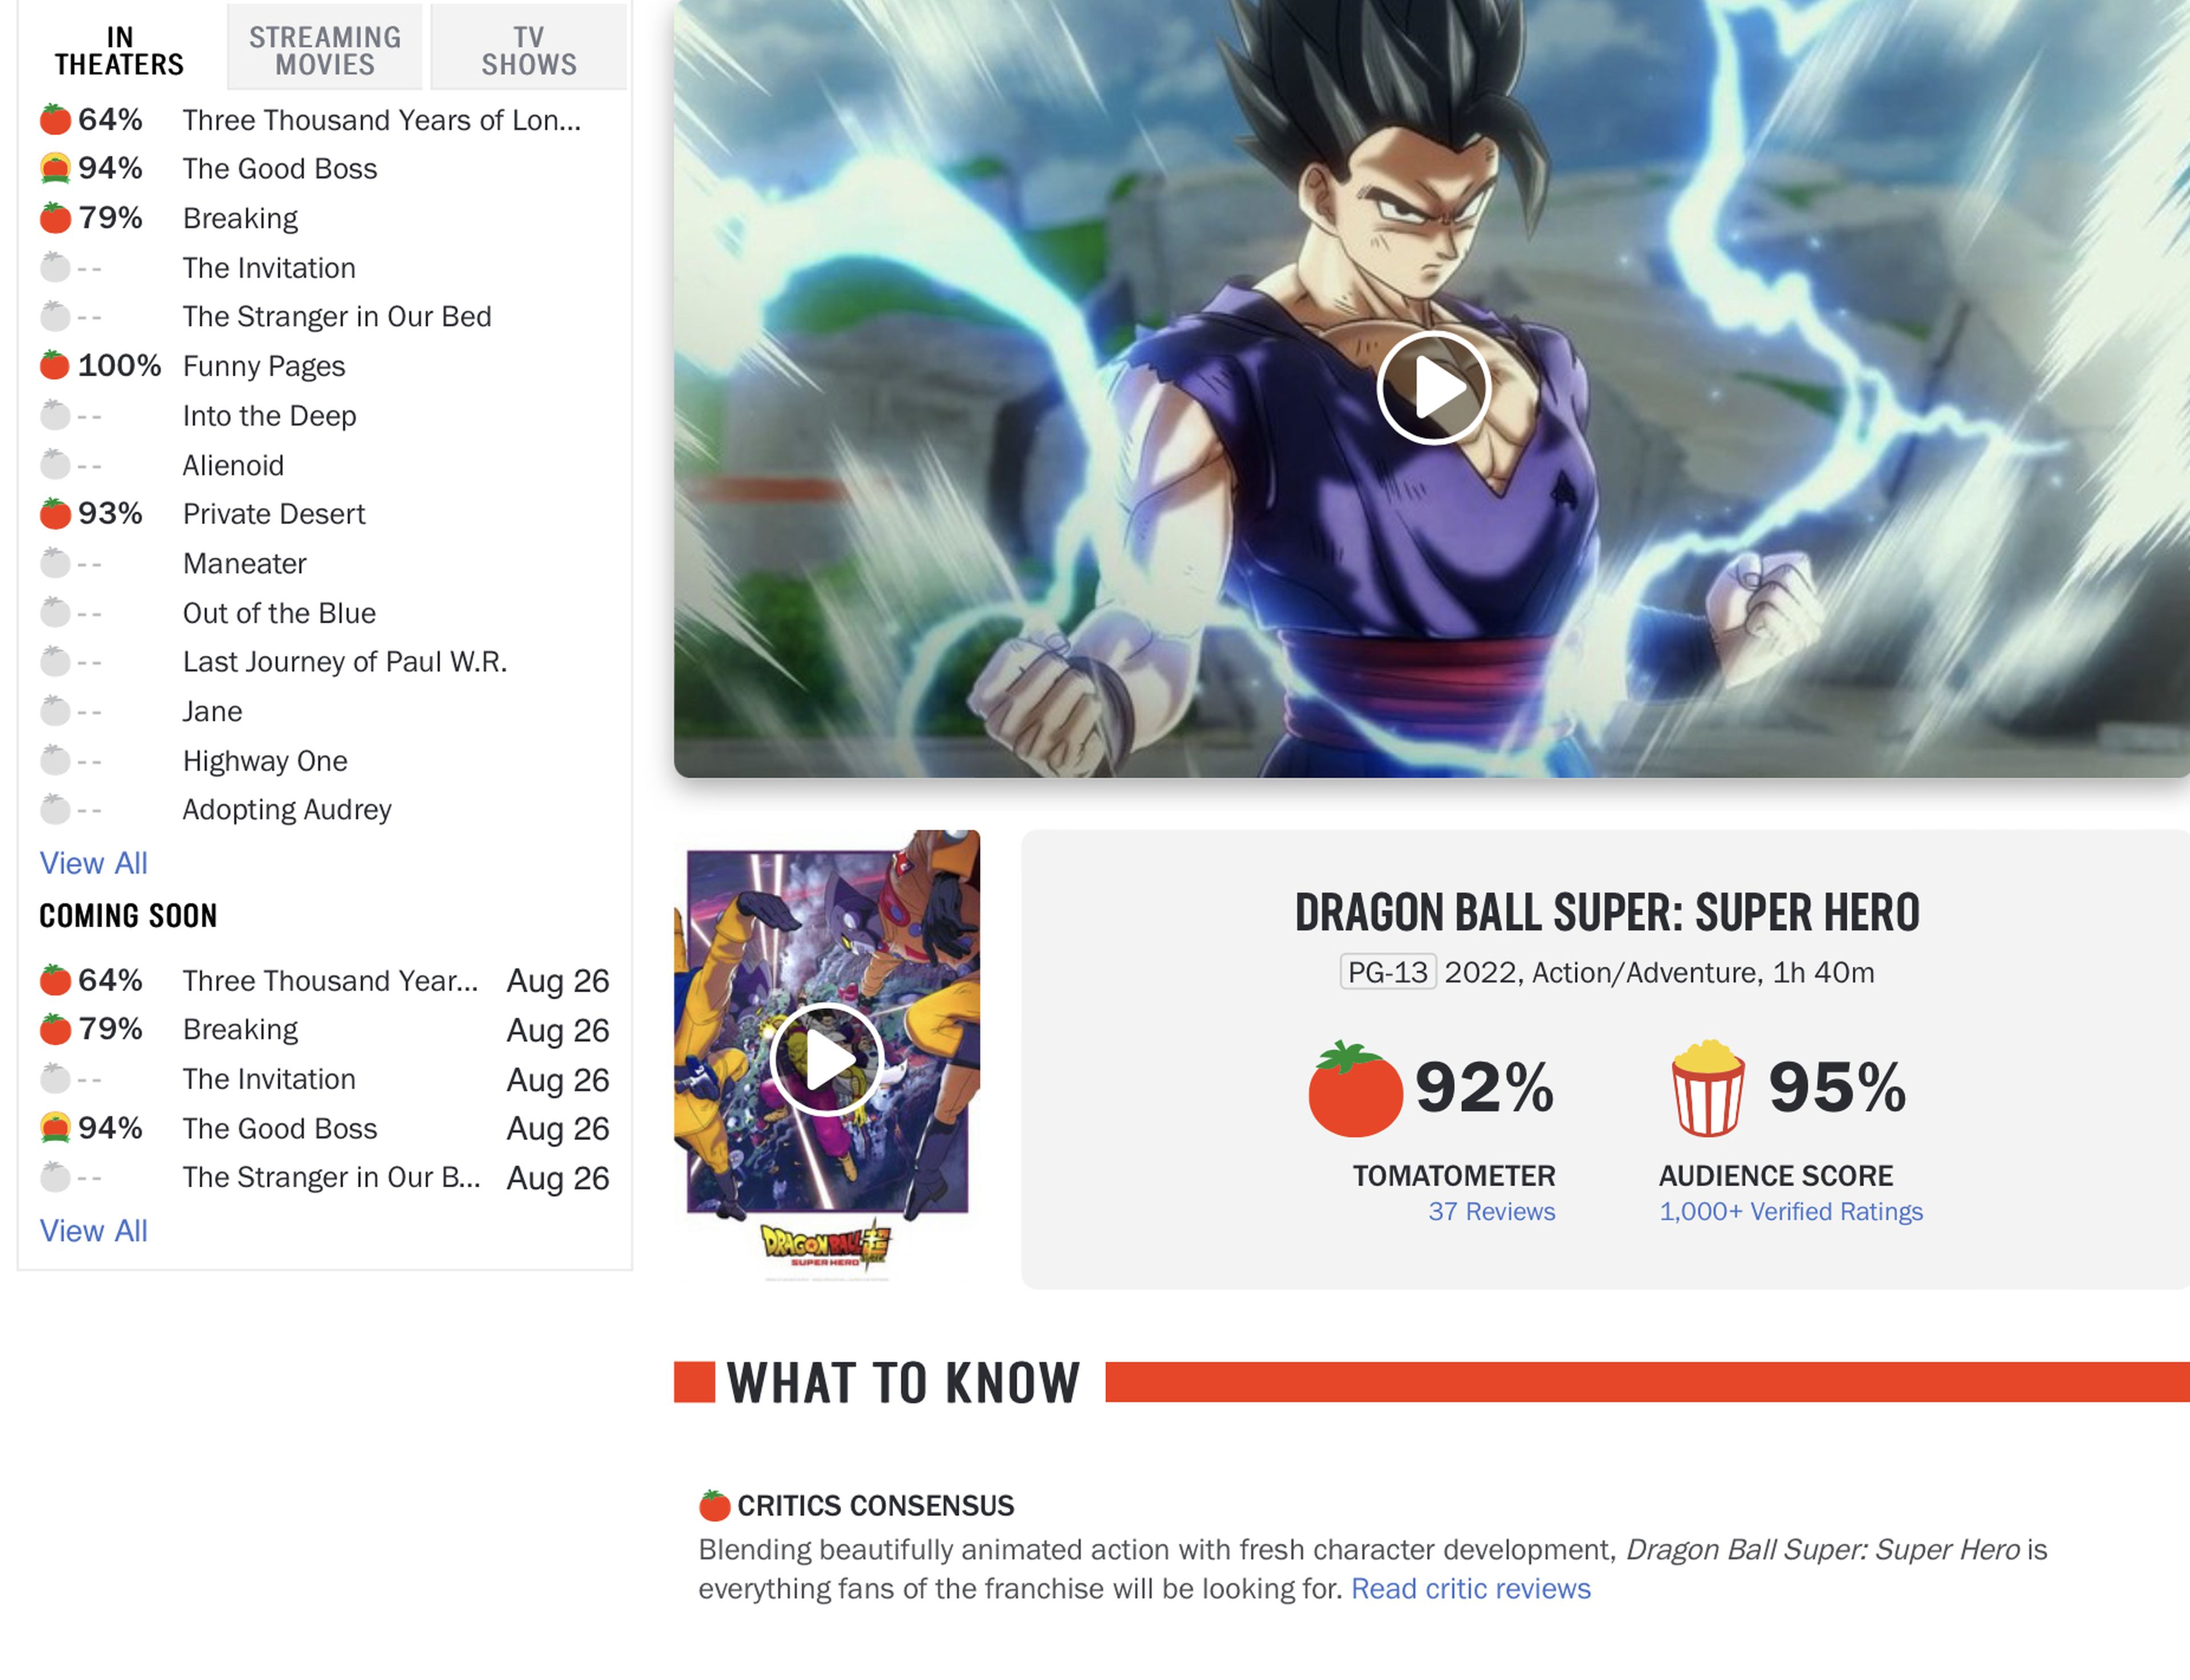 Dragon Ball Super: Super Hero - La nueva película de Akira Toriyama es un éxito internacional de taquilla y crítica. ¡Ya es número 1 en cines de EEUU!